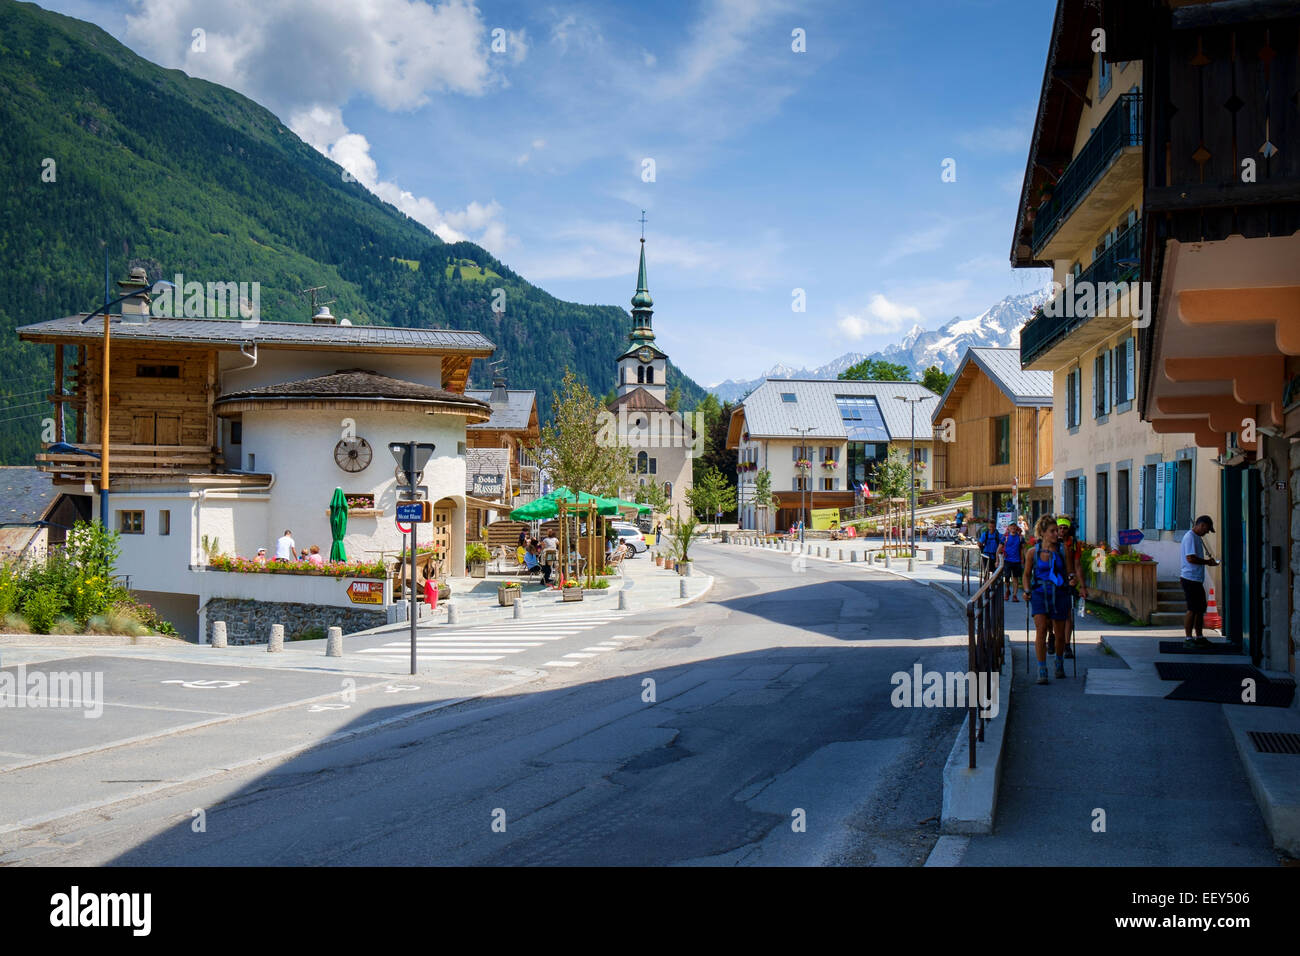 Les Houches Dorf und Ski resort in der Nähe von Chamonix, Französische Alpen, Haute-Savoie, Frankreich, Europa Stockfoto